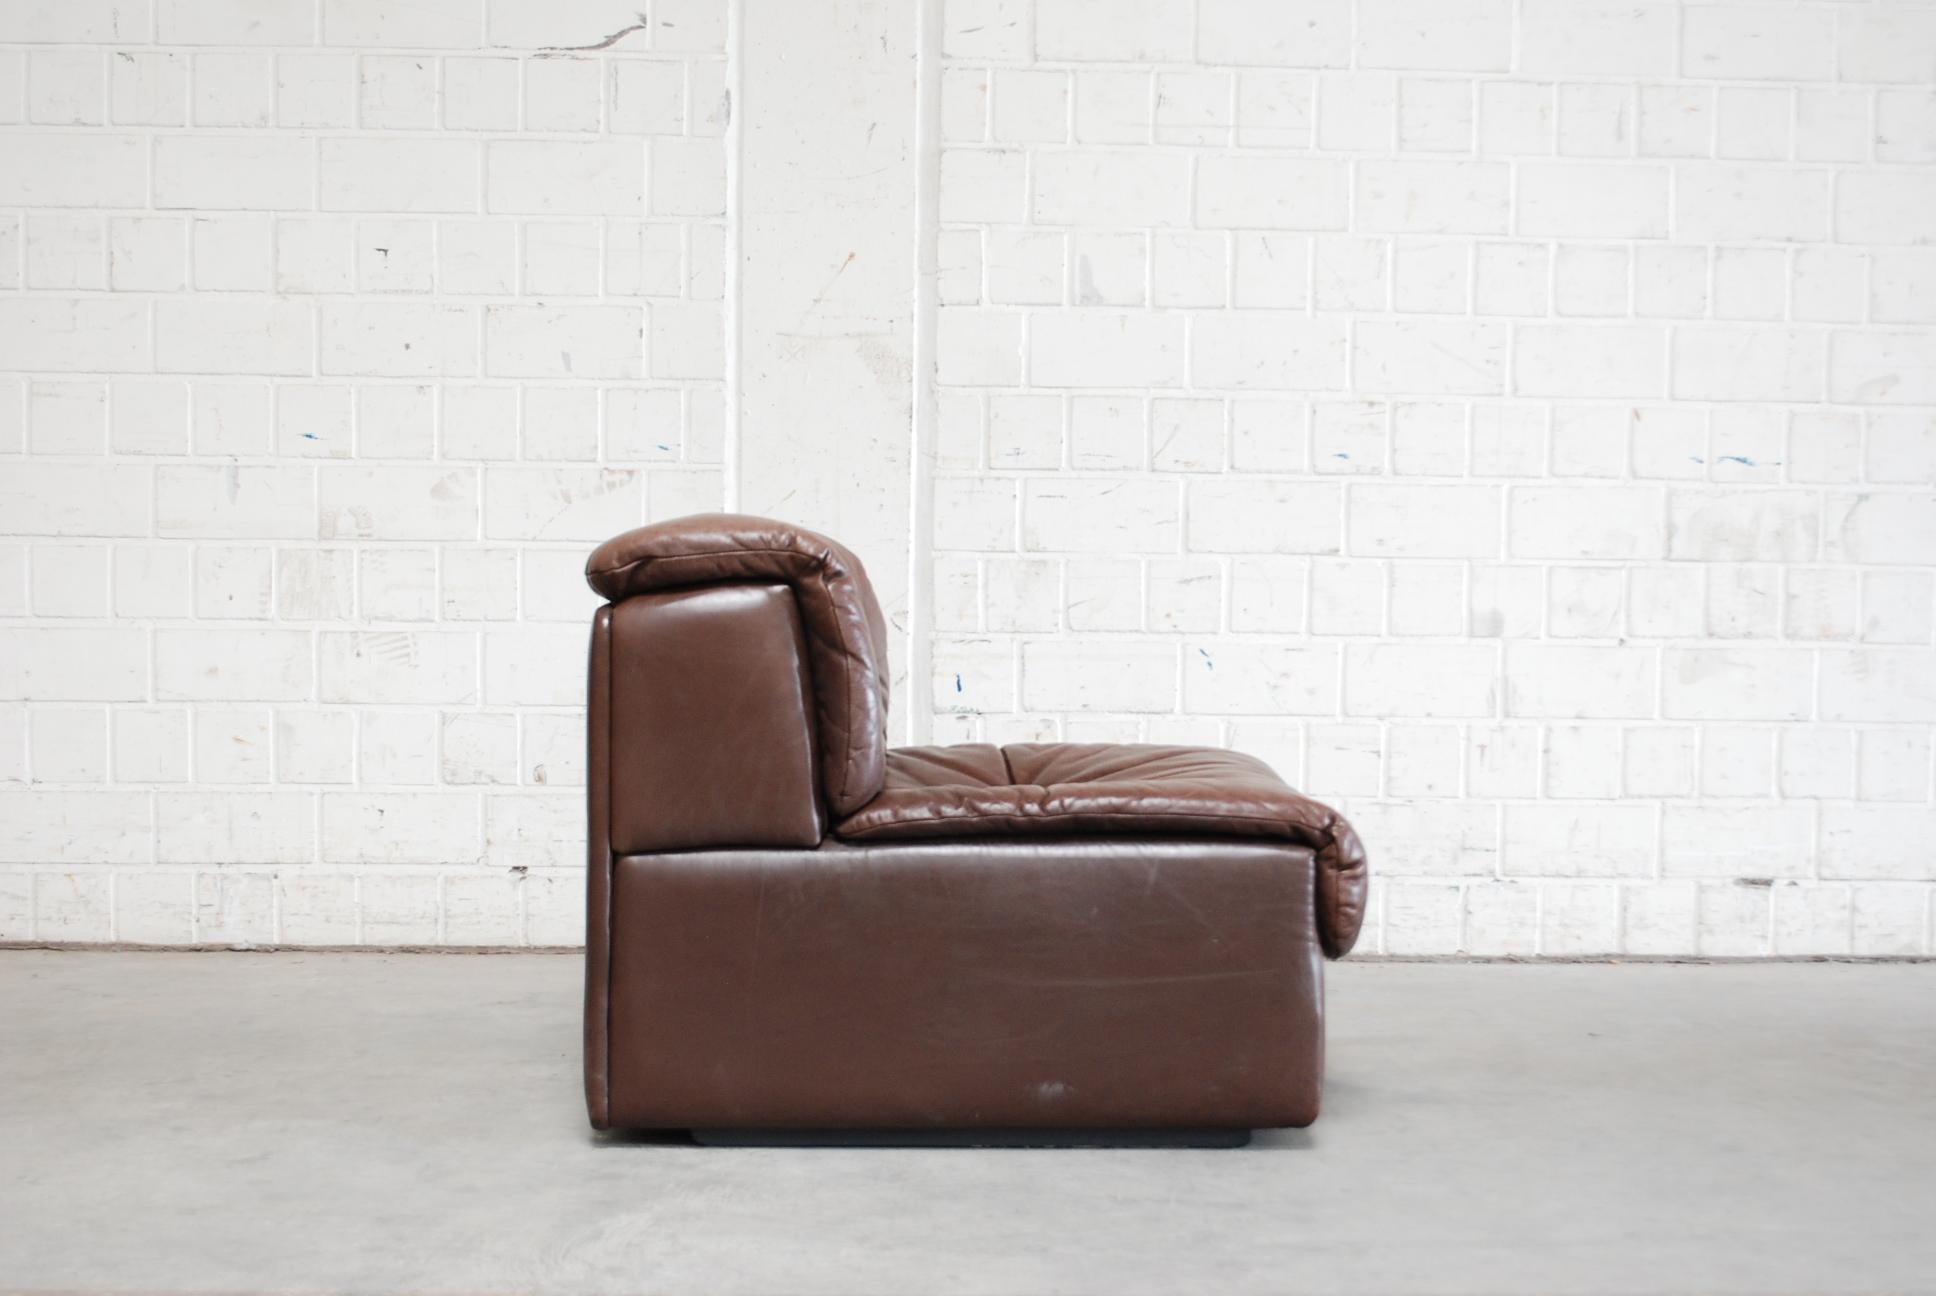 De Sede DS- 14  6x Modul Vintage Leather Sofa Brown 13